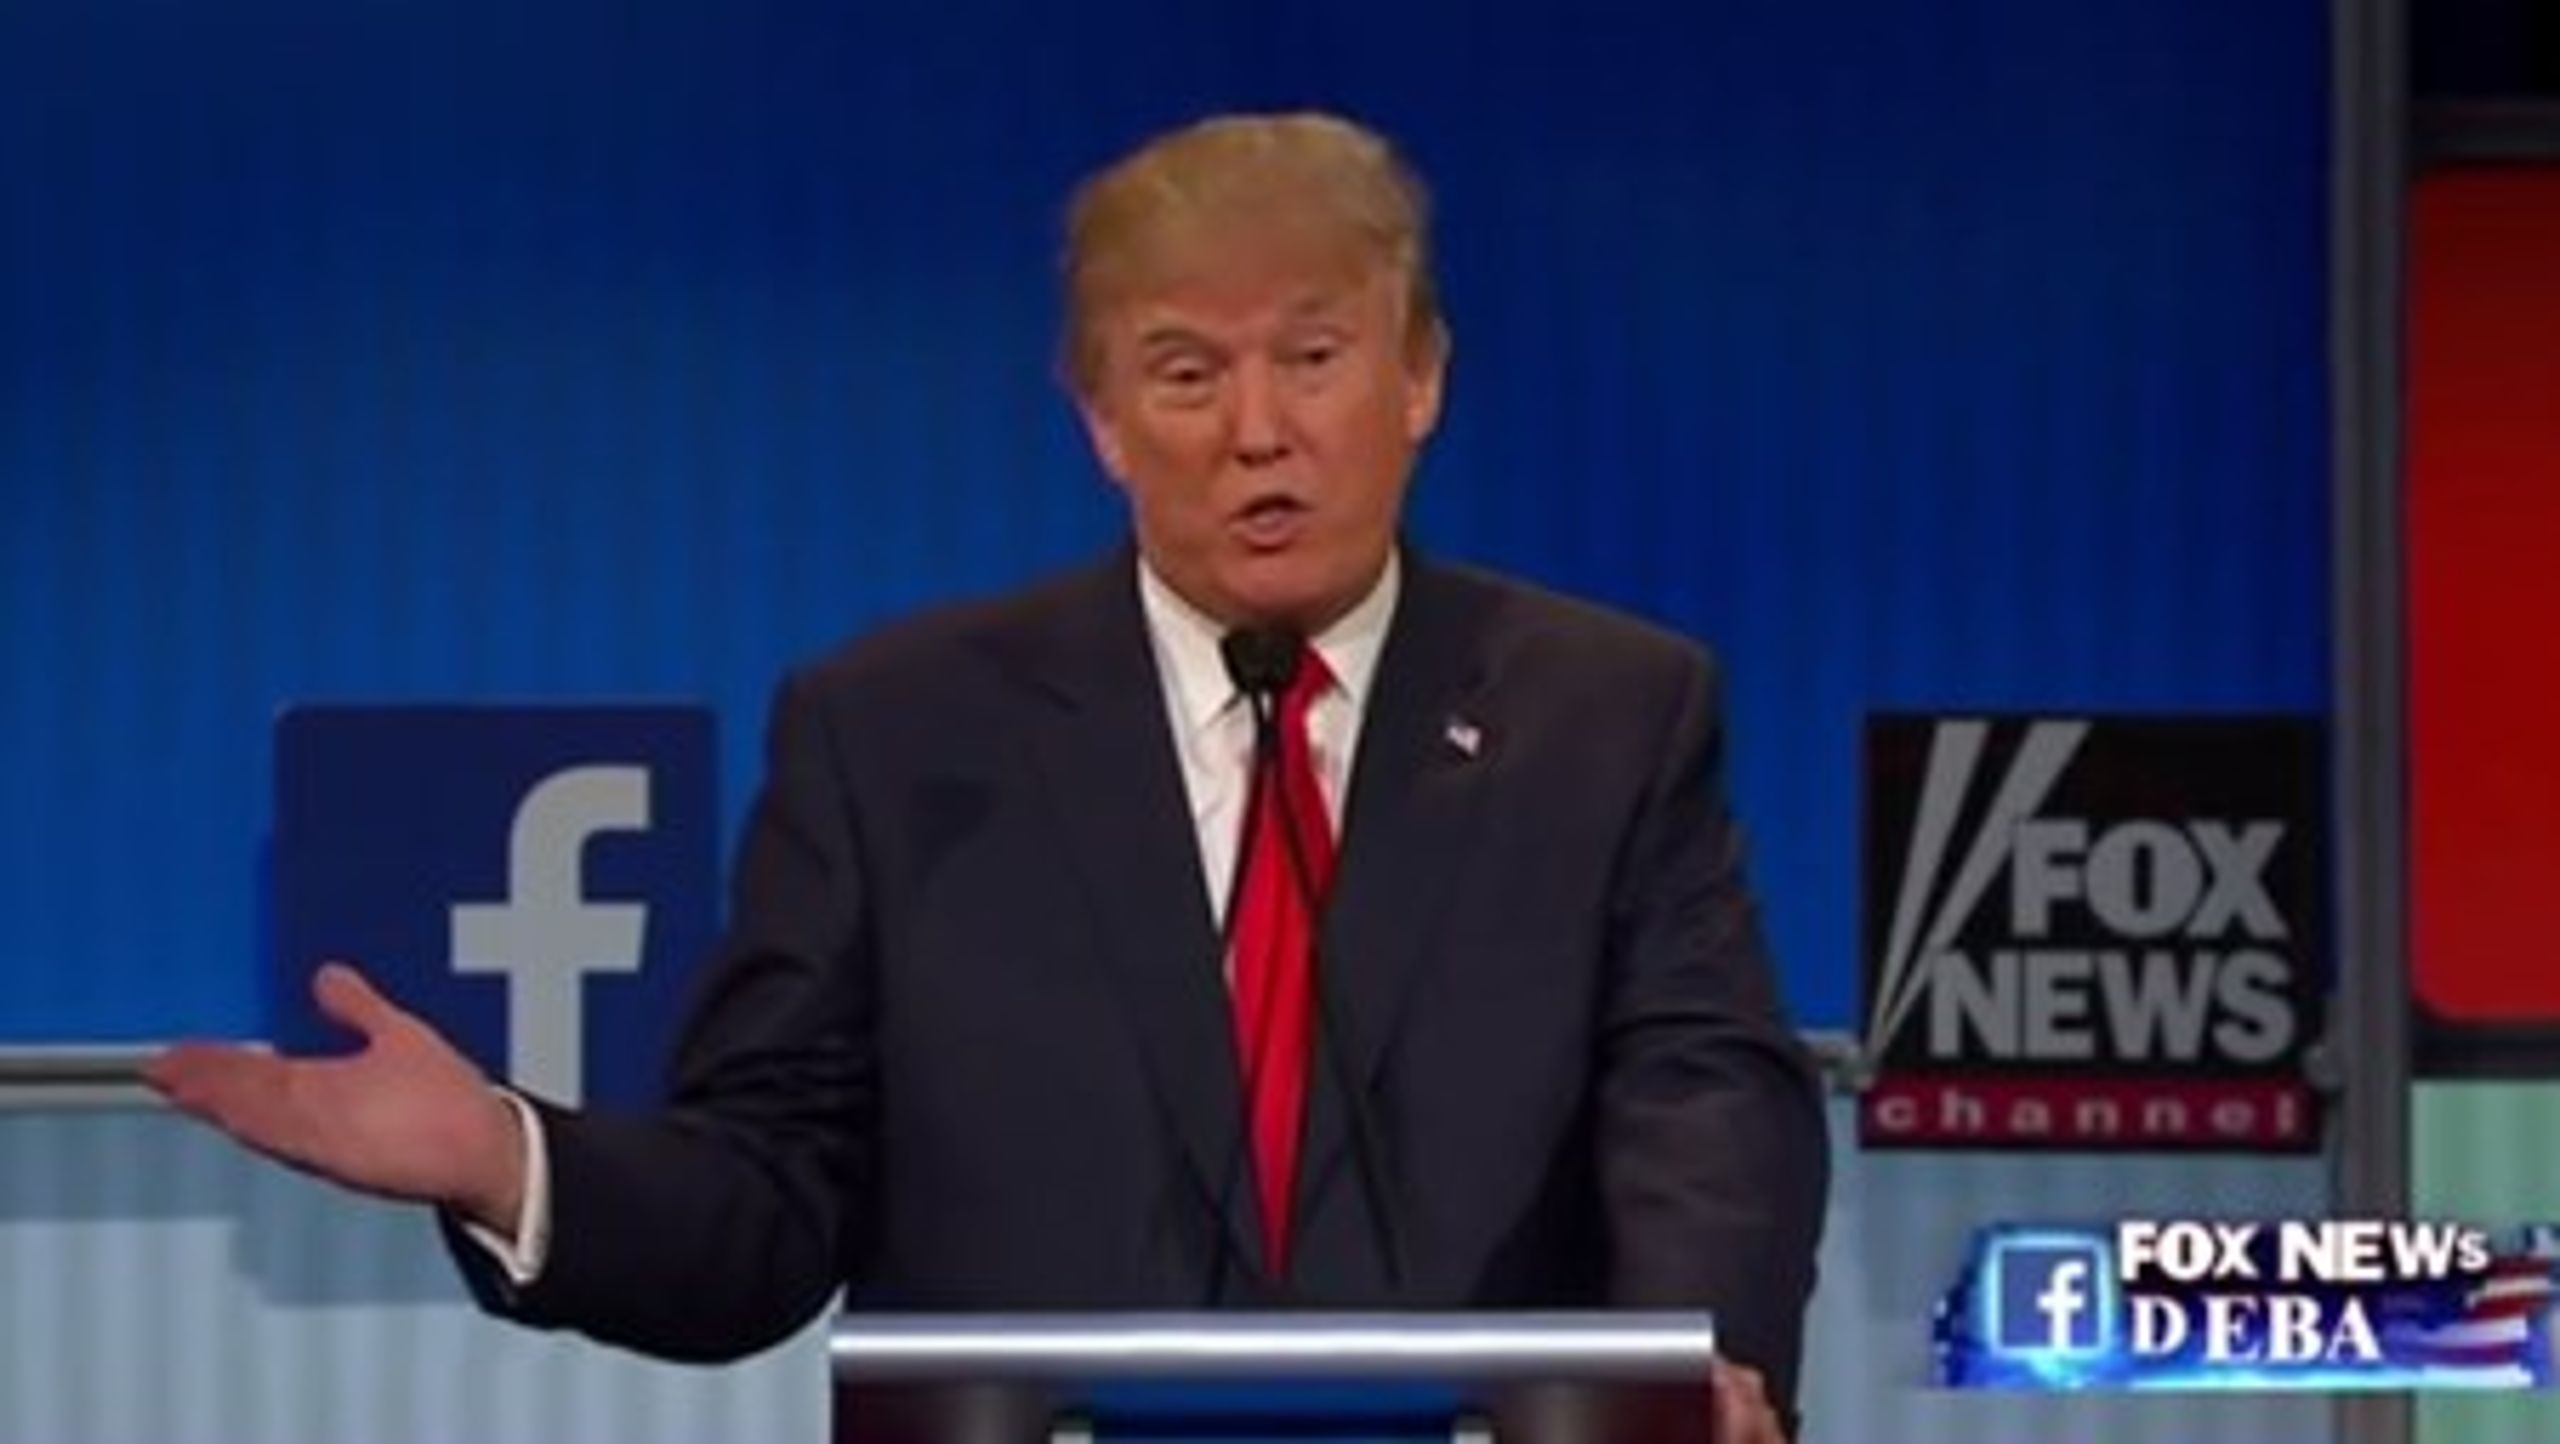 Donald Trump løb med en stor del af medieopmærksomheden efter debatten på Fox News&nbsp;blandt nogle af de republikanske kandidater.